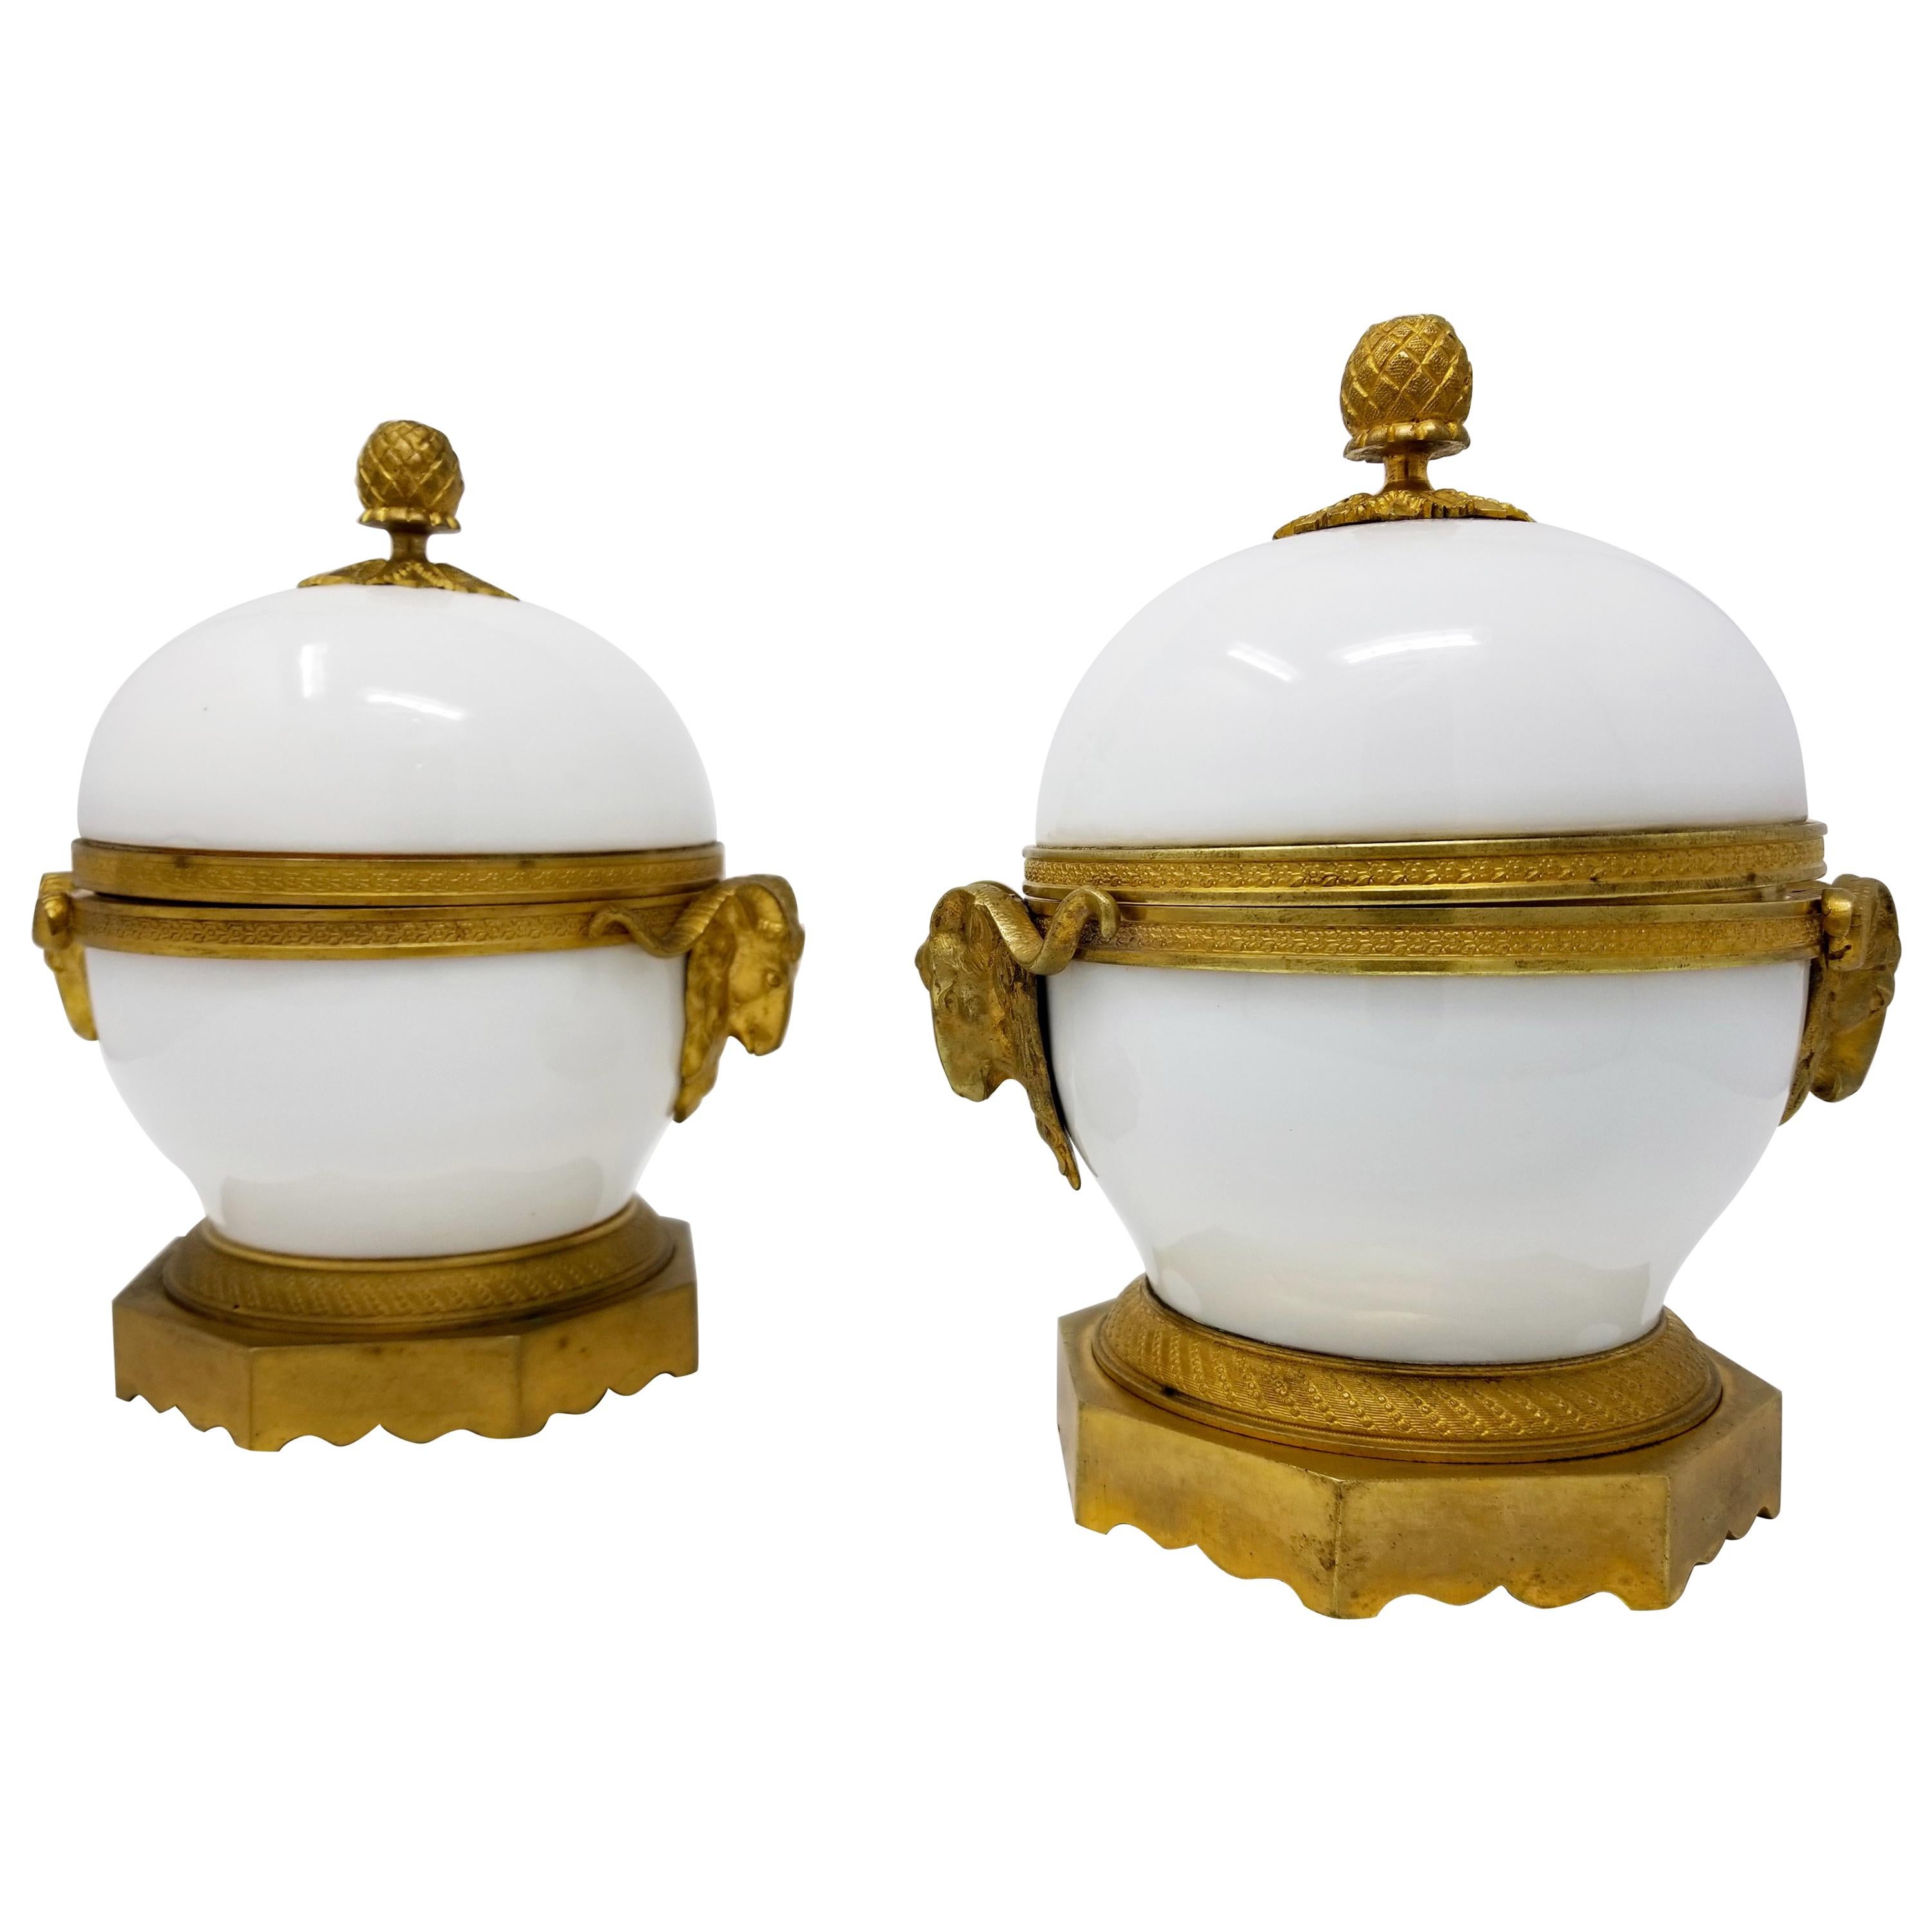 Paire de bols Louis XVI recouverts de porcelaine blanche et de bronze doré montés en bronze doré